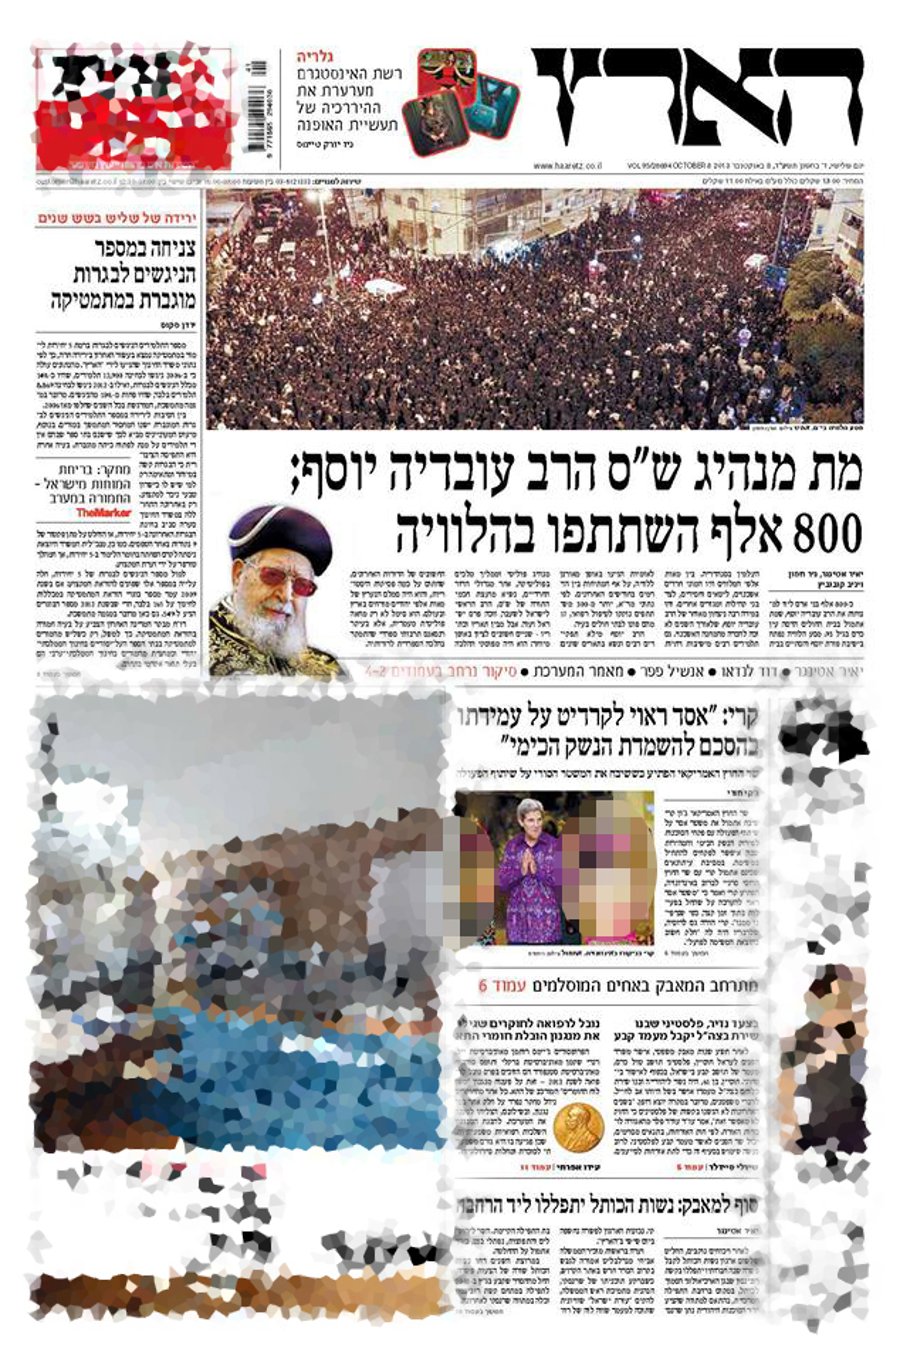 כך זה נראה: כותרות העיתונים בבוקר שאחרי פטירת מרן רבינו עובדיה יוסף